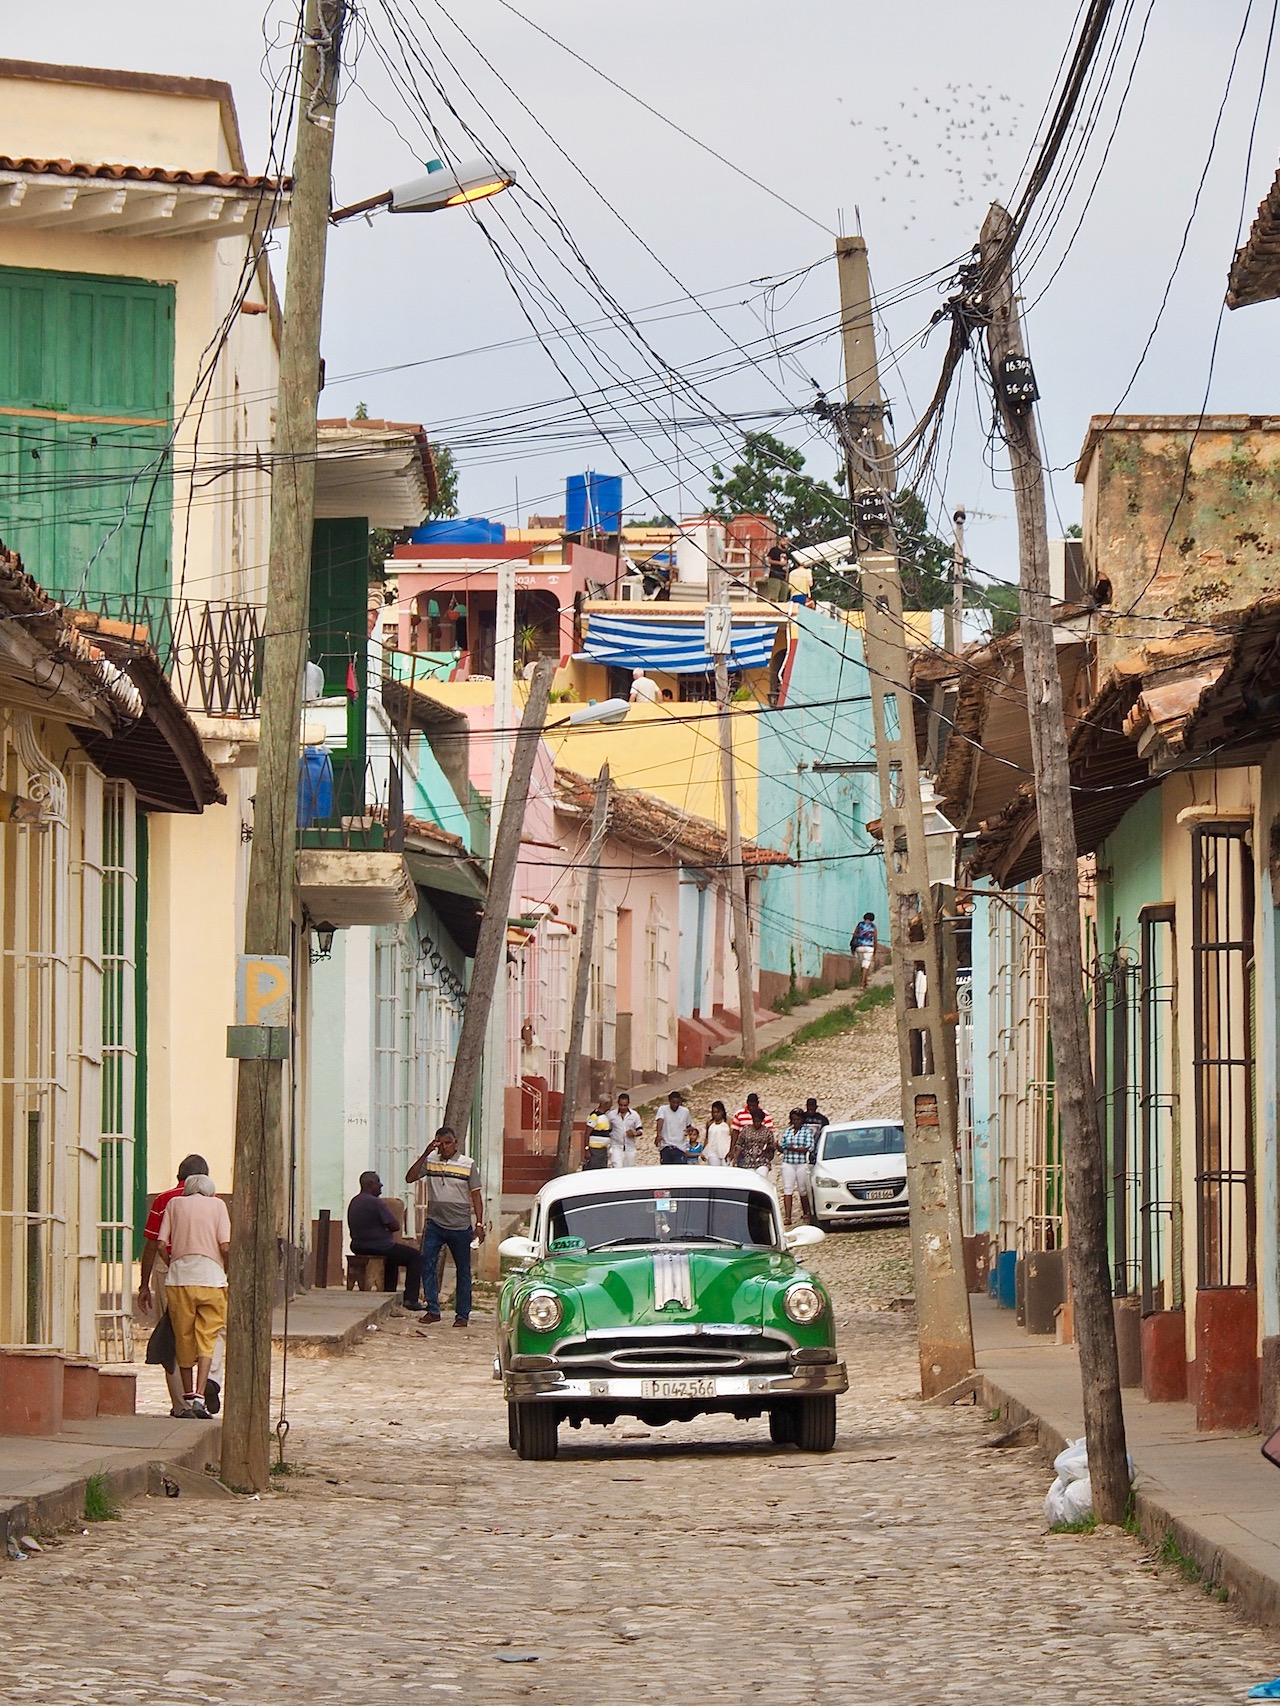 Cuba - 2 jours à Trinidad - dans la ville